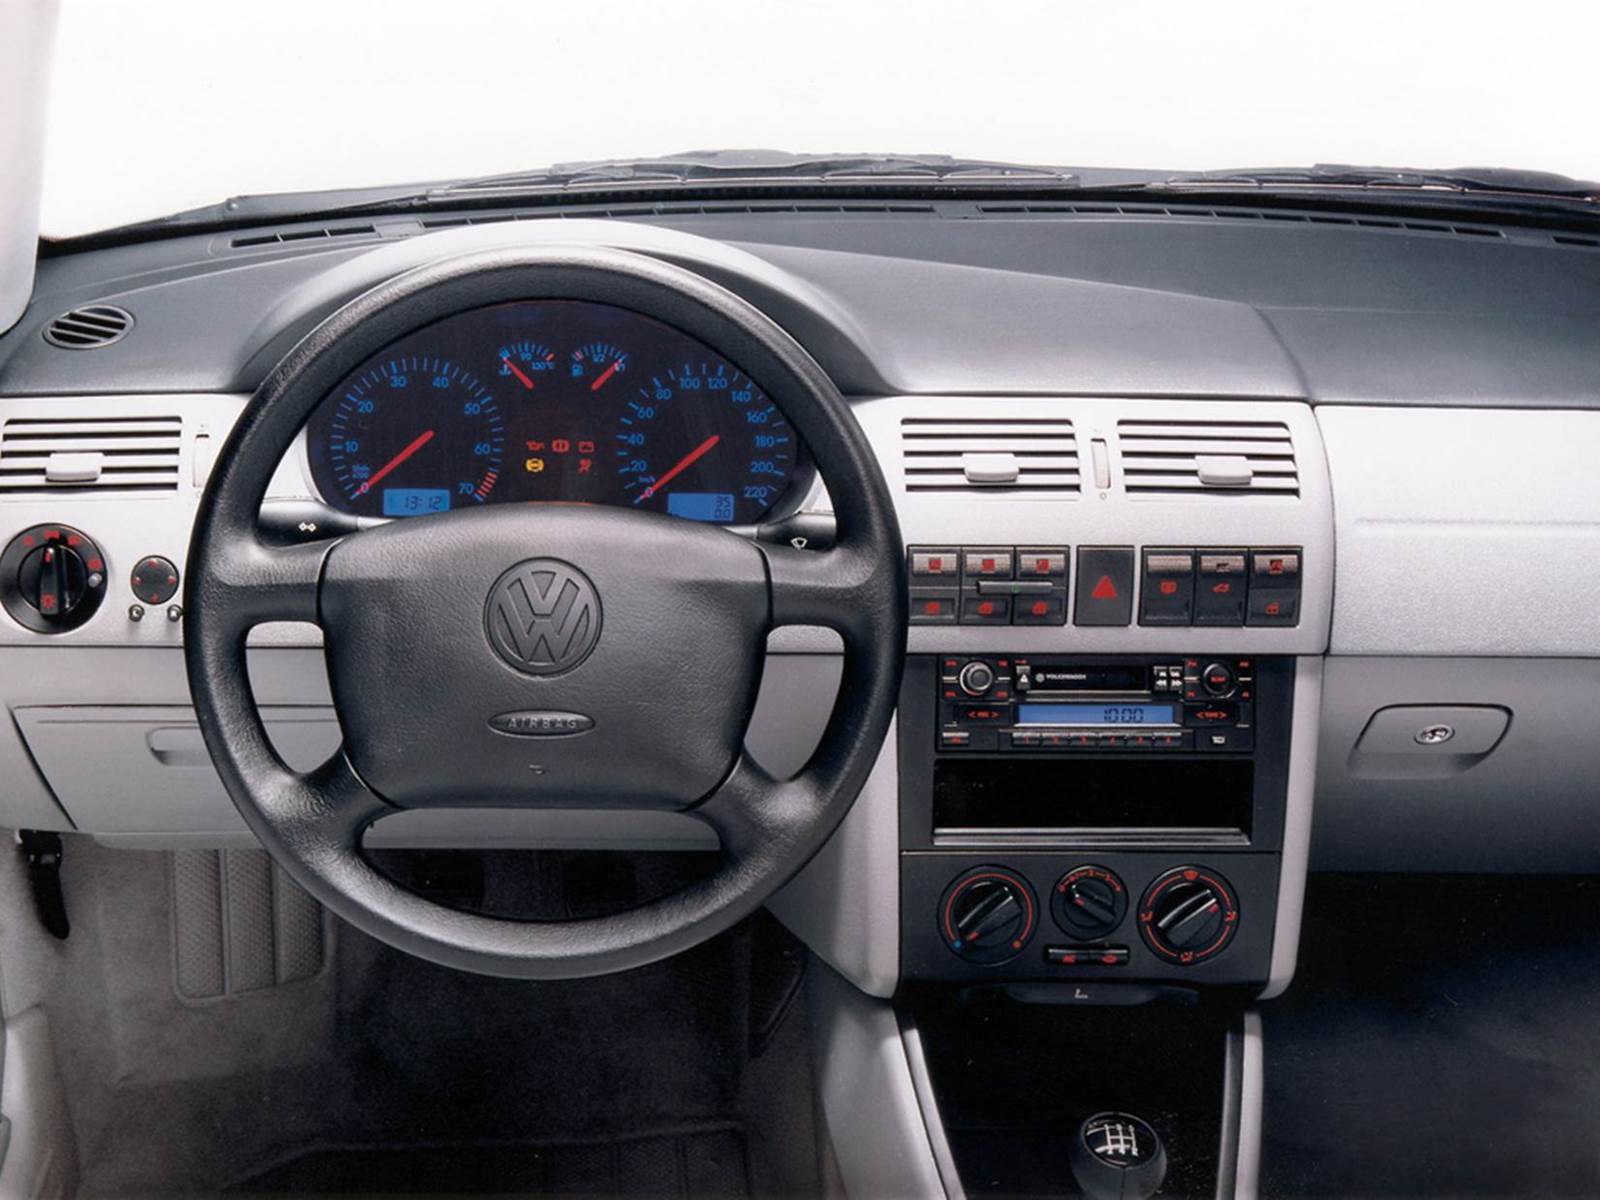 Volkswagen Gol 2001 1.0 16V Turbo - interior